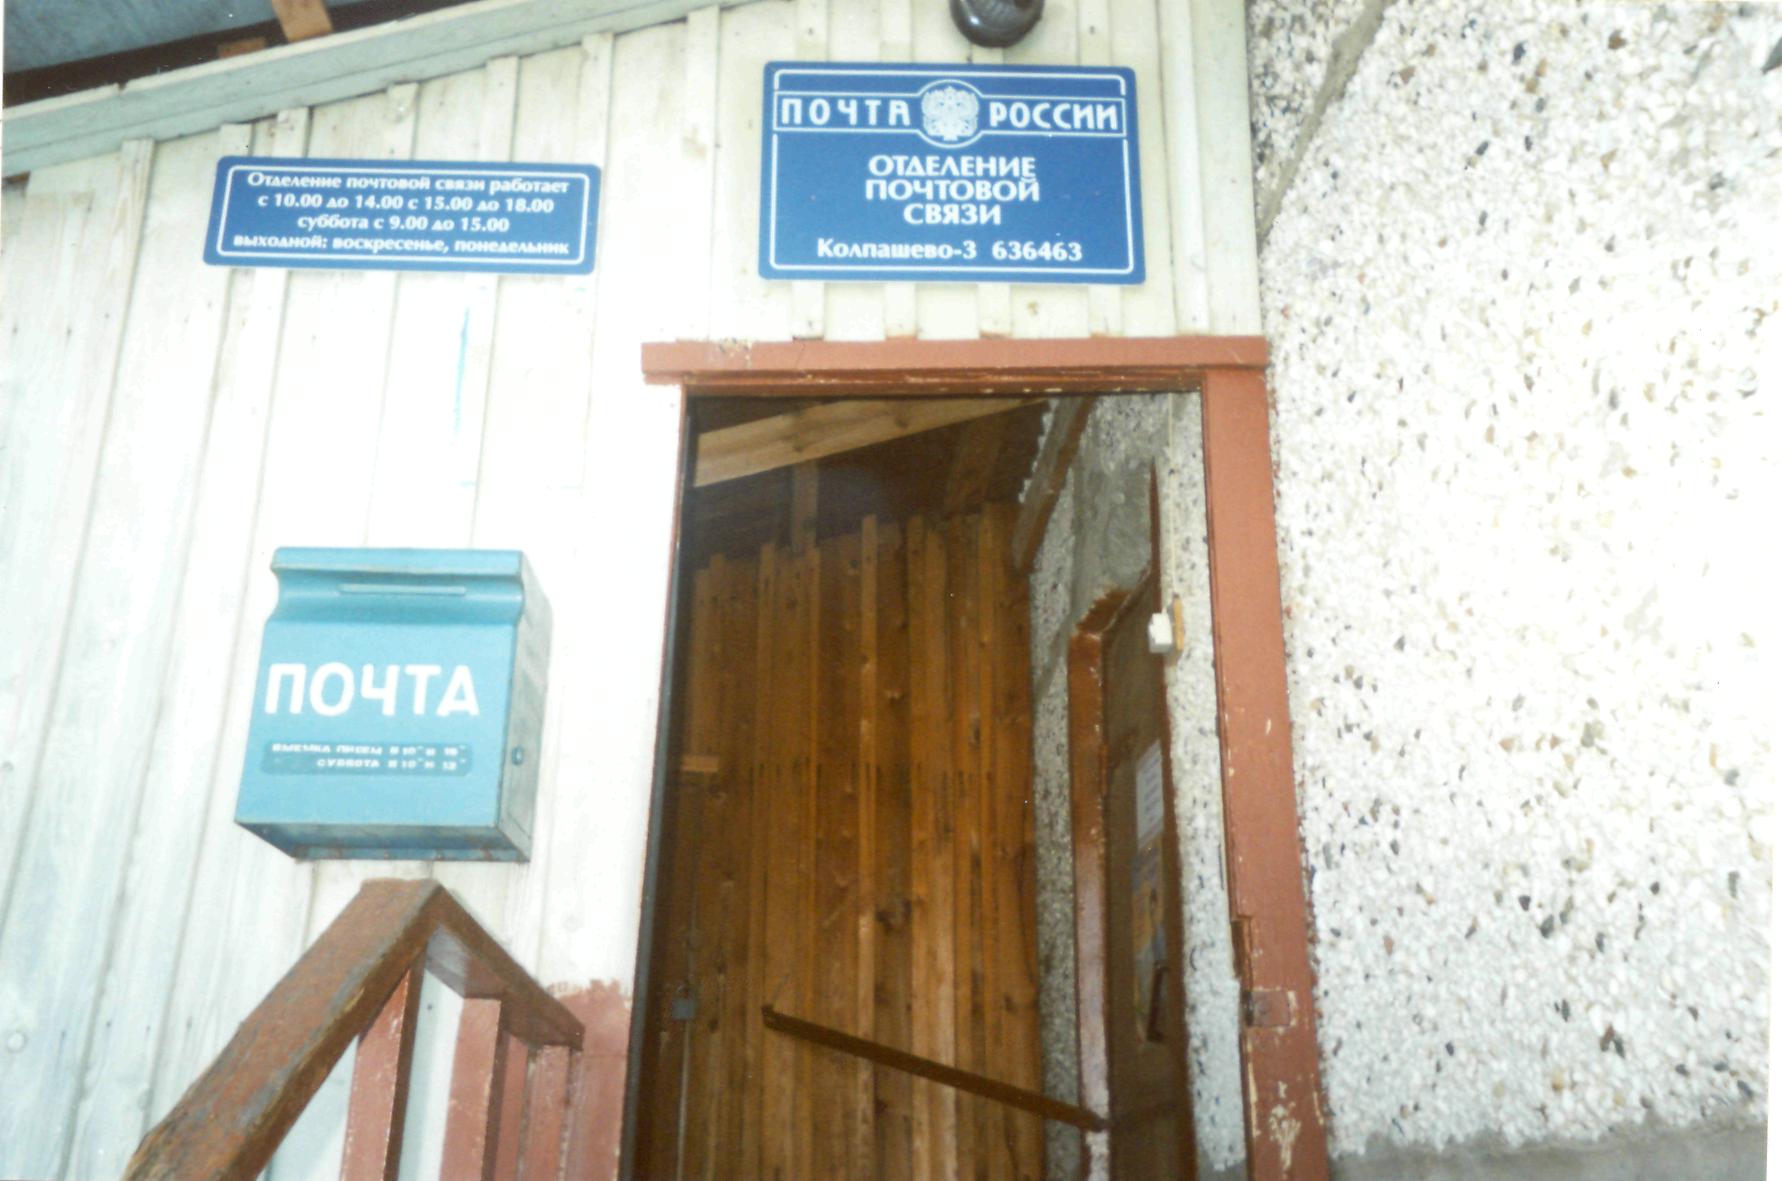 ФАСАД, отделение почтовой связи 636463, Томская обл., Колпашево